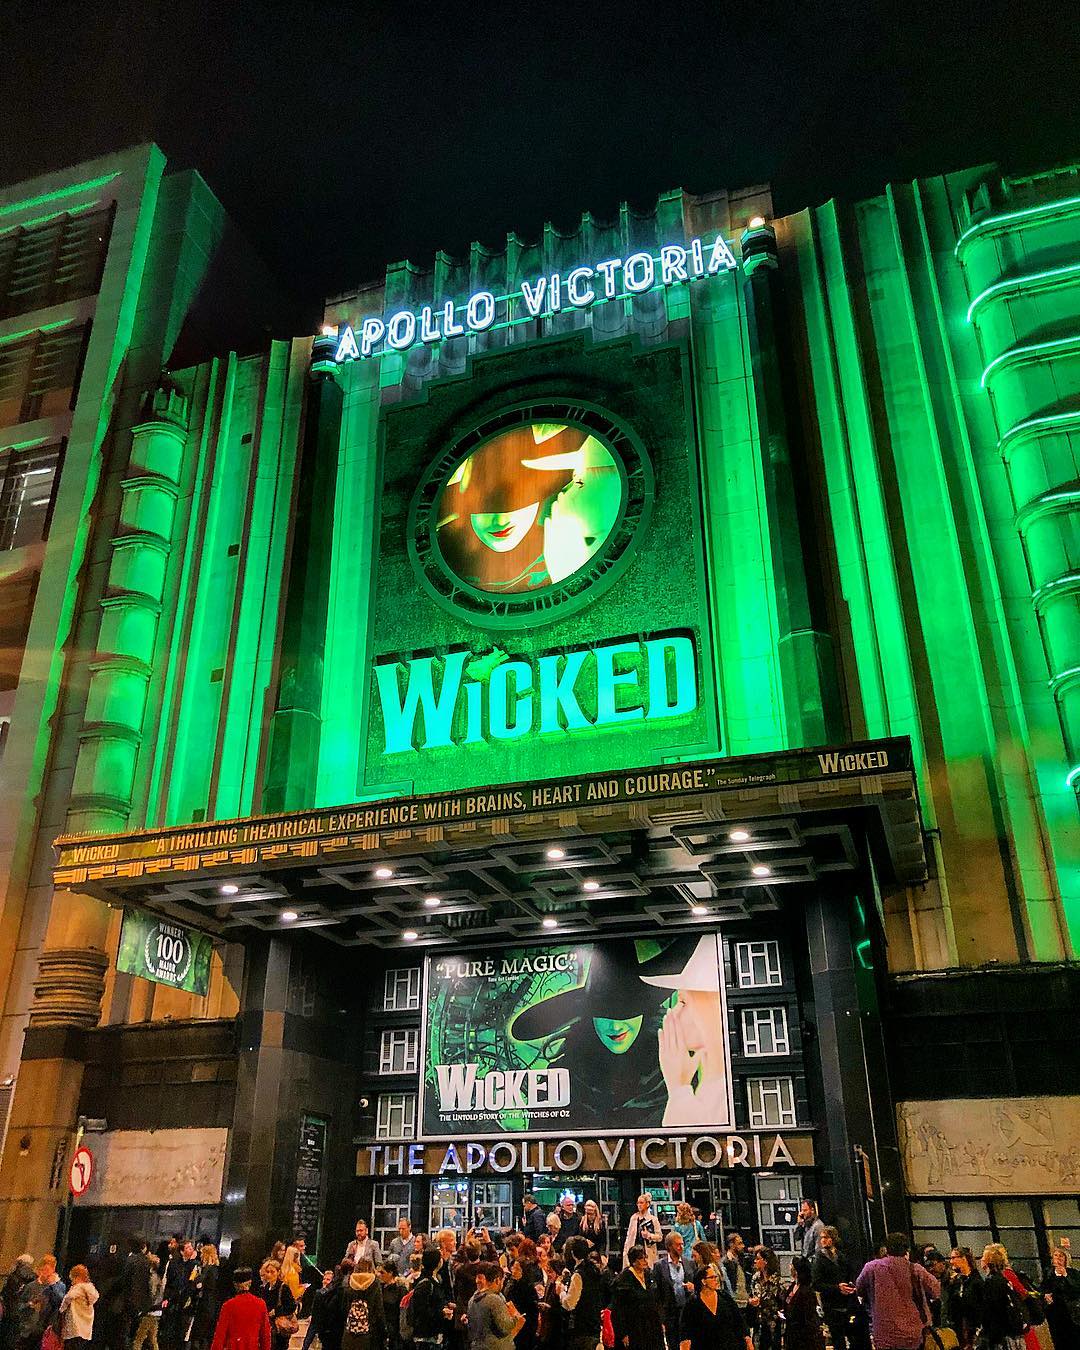 Wicked at Apollo Victoria, London